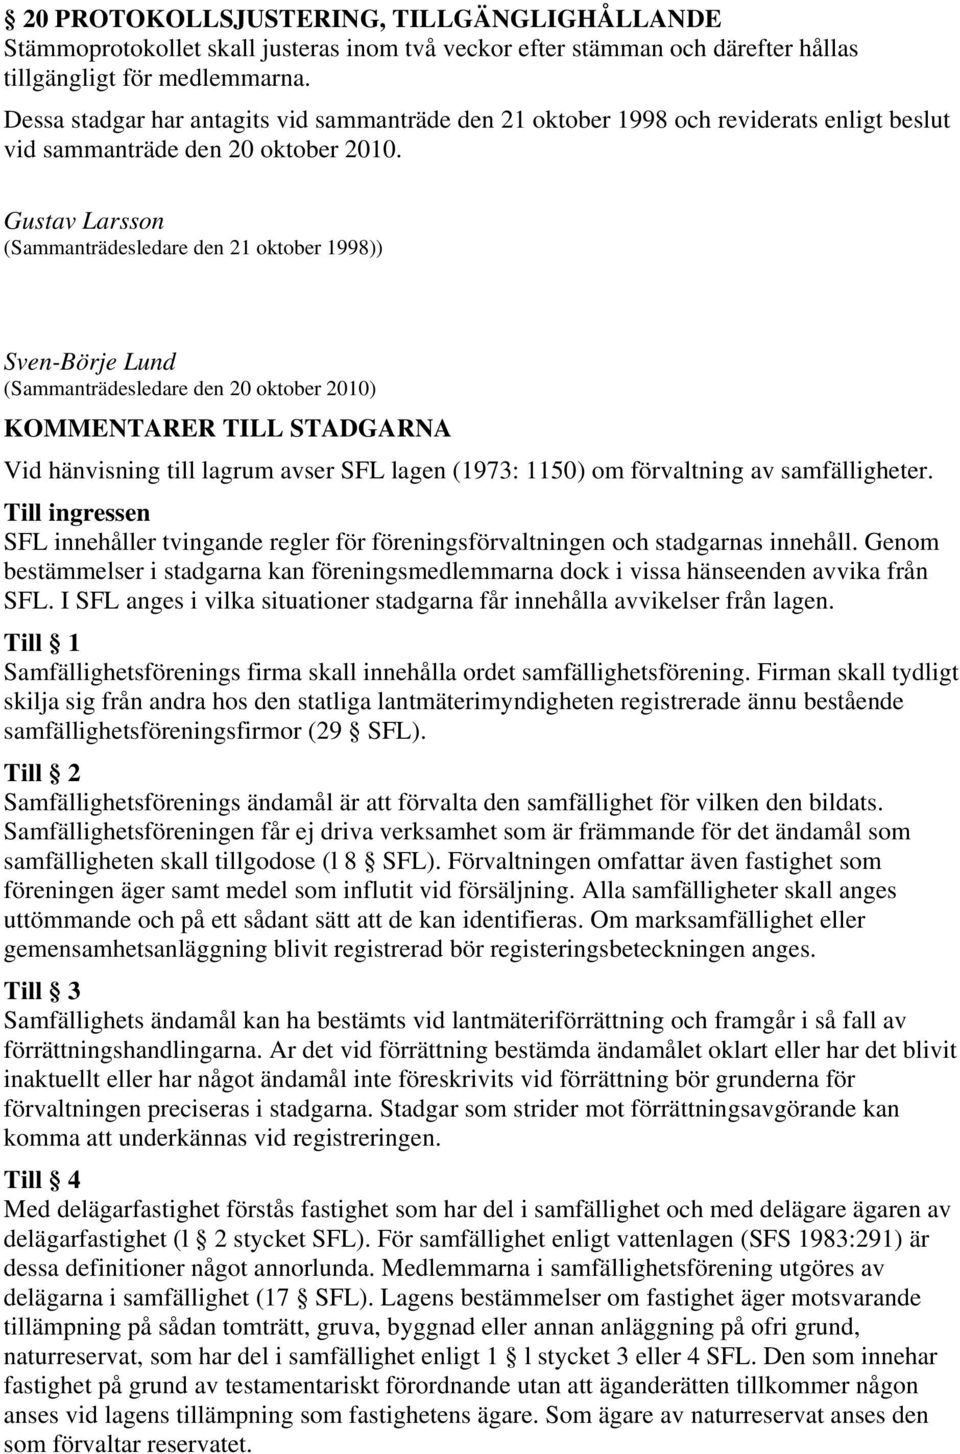 Gustav Larsson (Sammanträdesledare den 21 oktober 1998)) Sven-Börje Lund (Sammanträdesledare den 20 oktober 2010) KOMMENTARER TILL STADGARNA Vid hänvisning till lagrum avser SFL lagen (1973: 1150) om